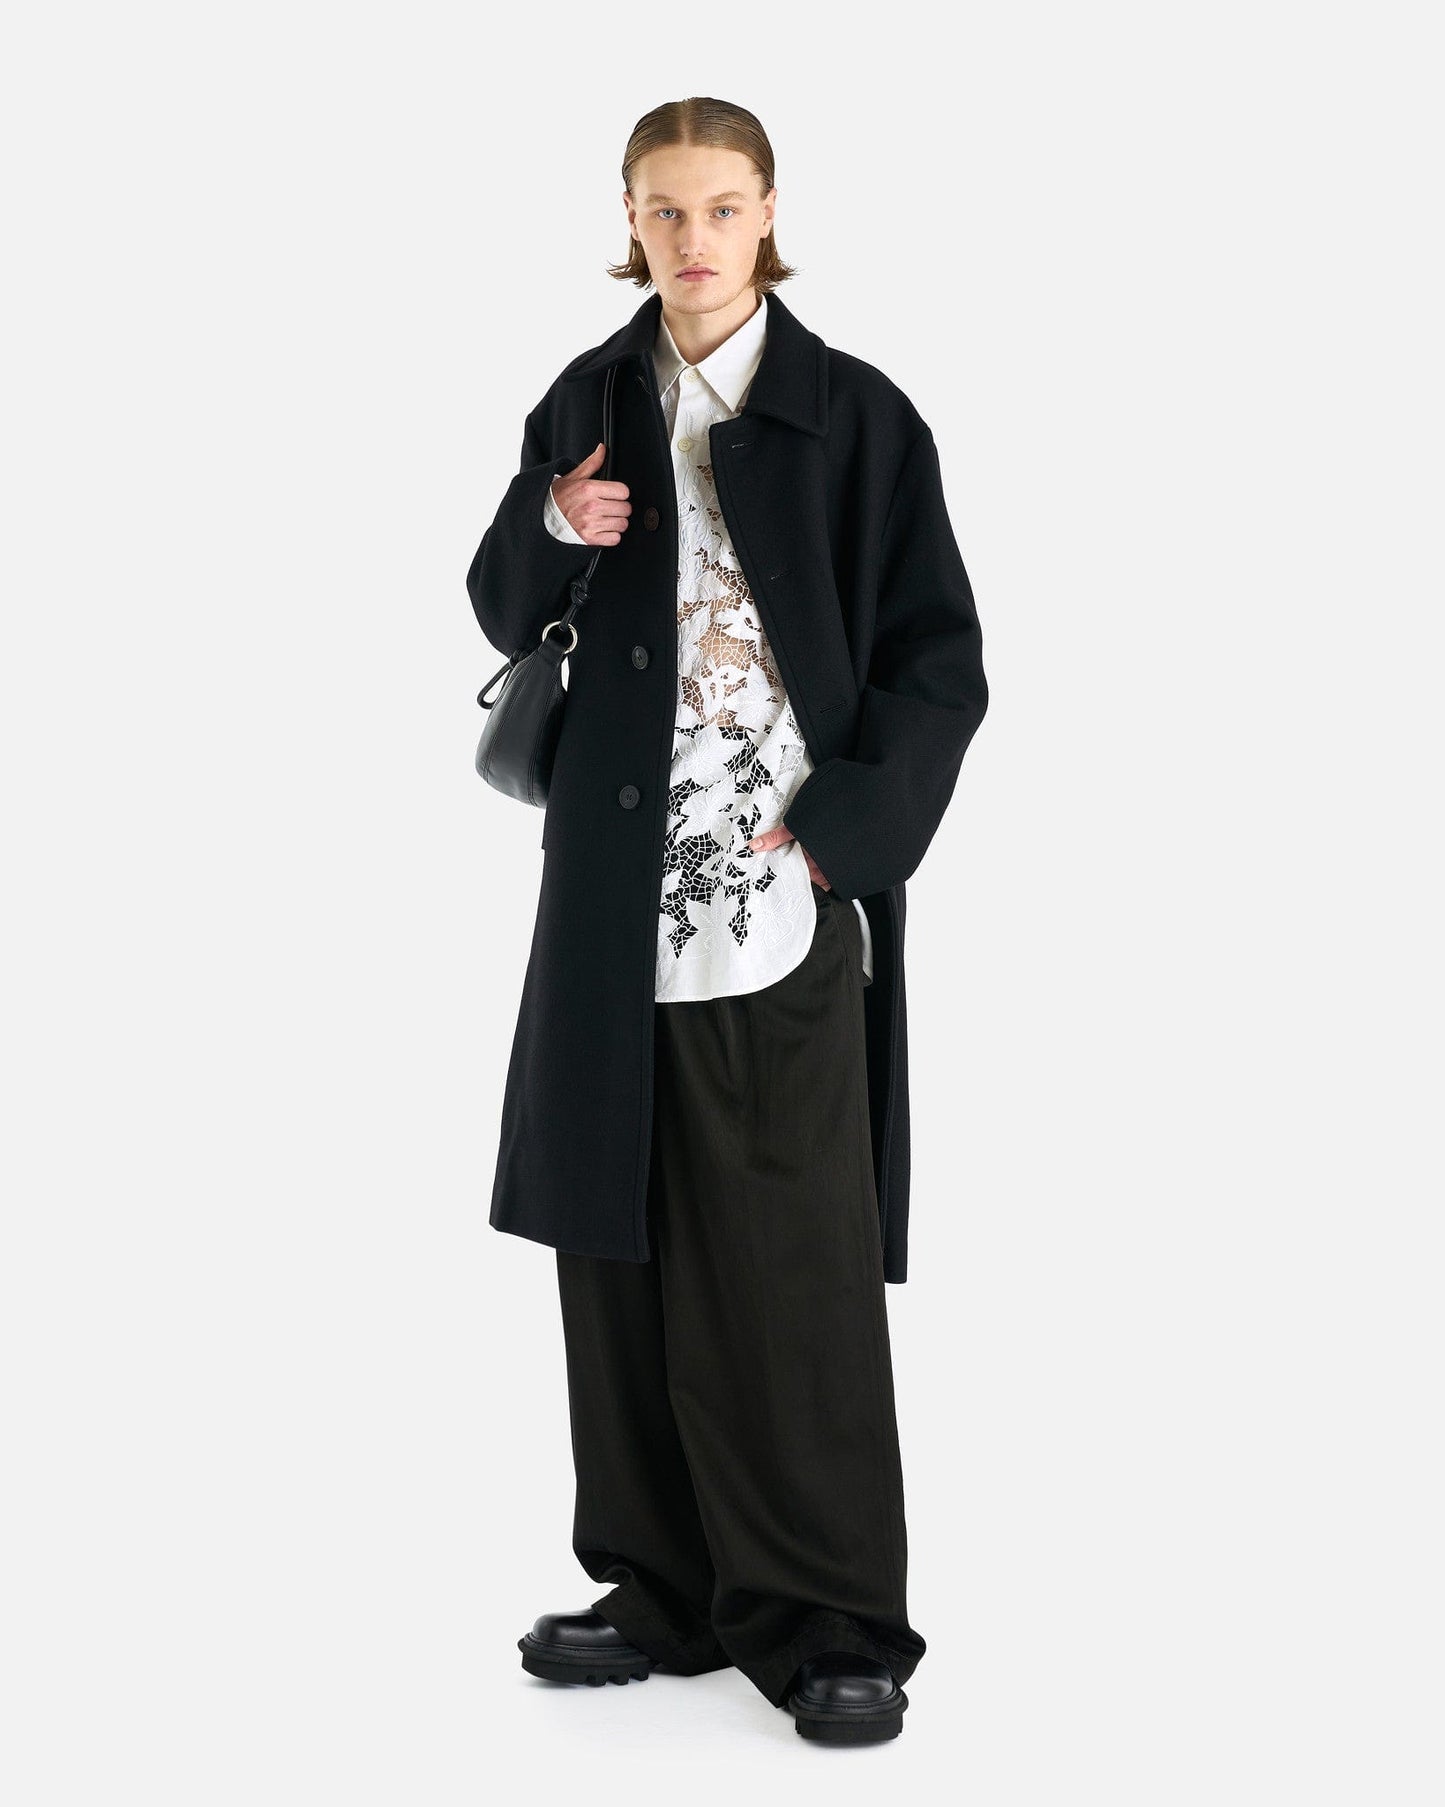 Dries Van Noten Men's Coat Redmore Coat in Black